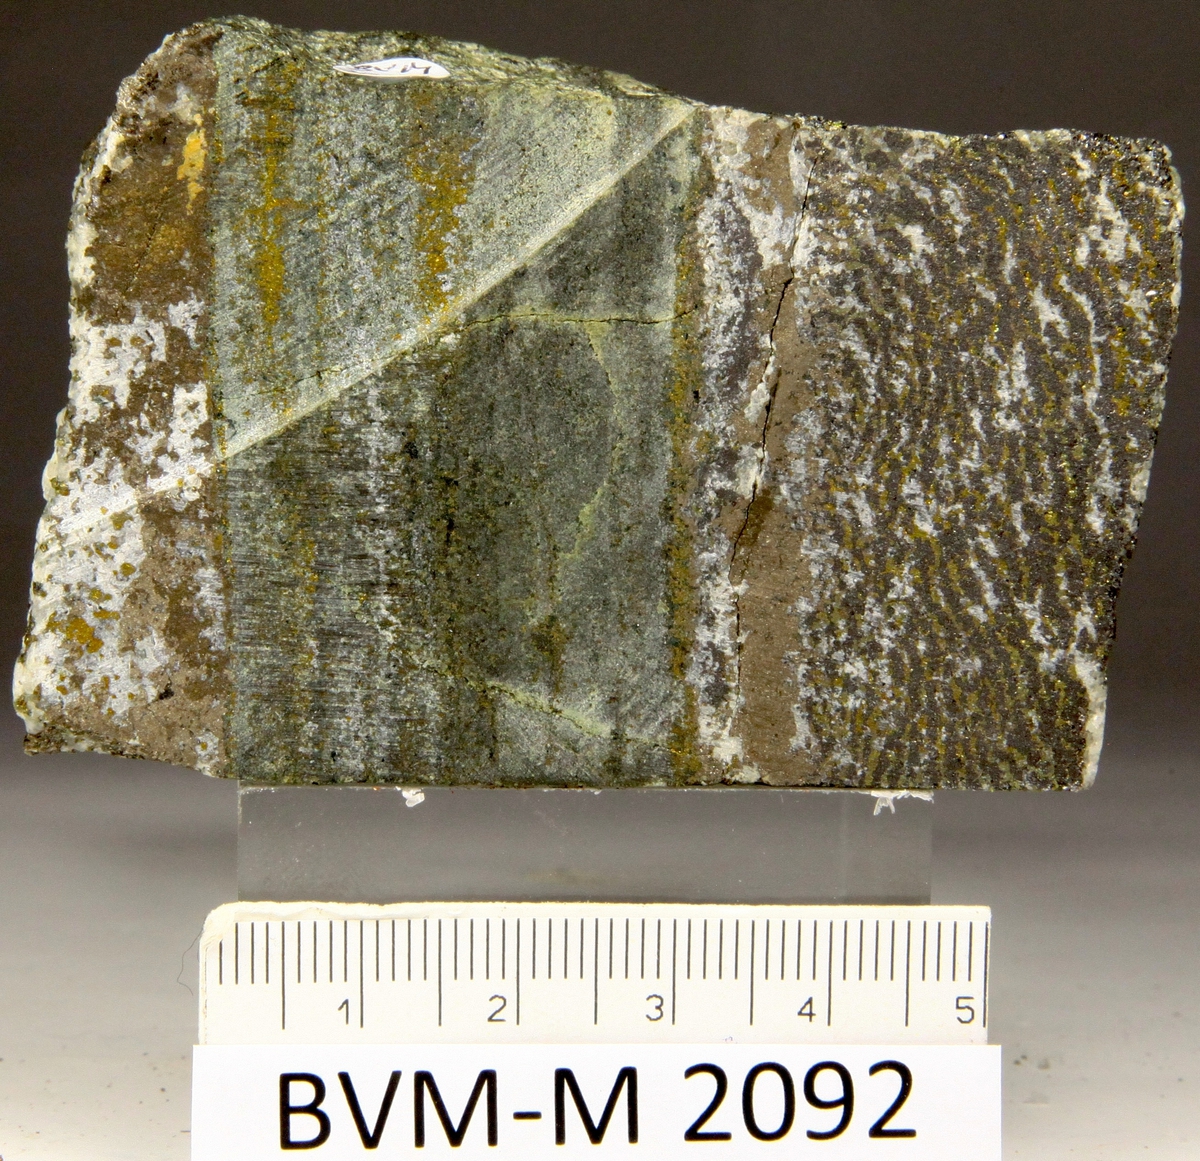 Skåret stykke av magnetitt/kismalm.
Viscaria gruve.
Stuffstørrelse: 7X4,8X2,5